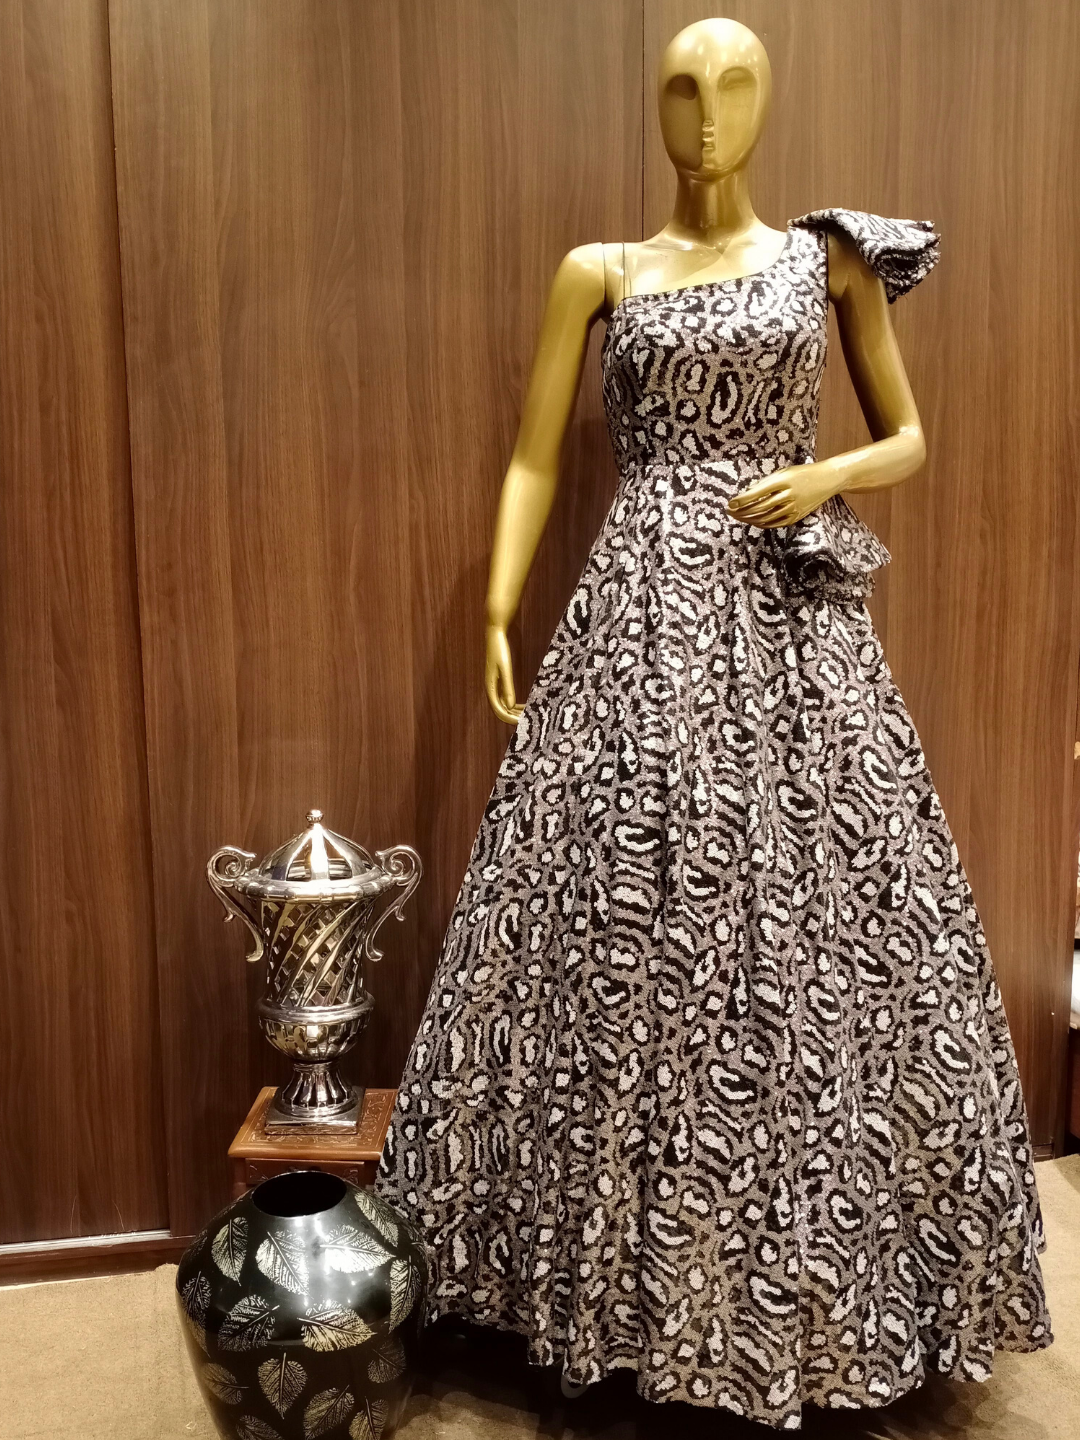 Golden Globes Trend Alert! Black-and-Gold Dresses